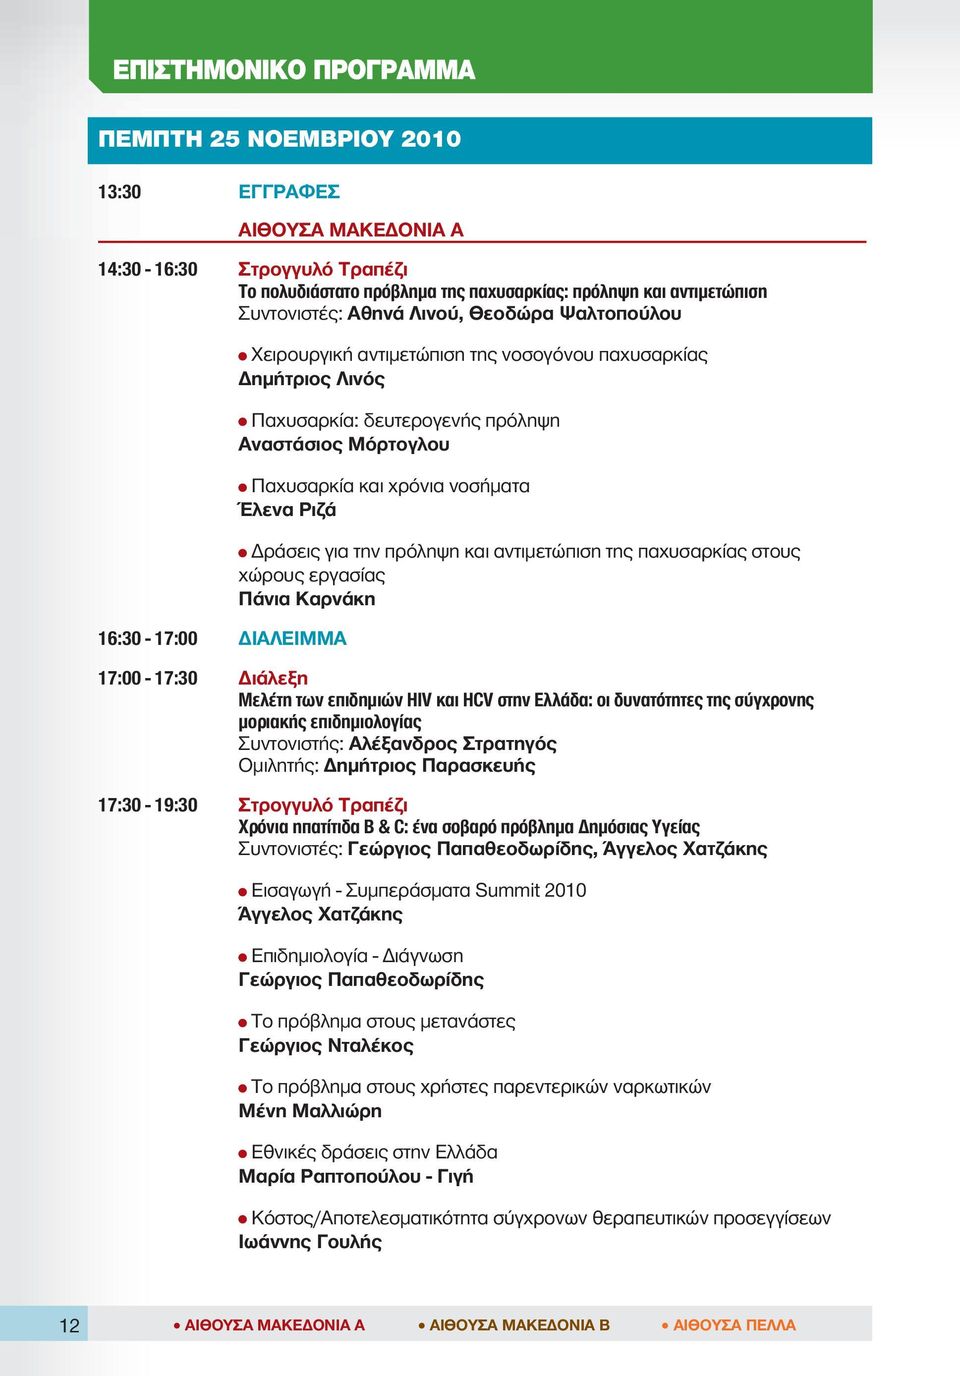 Δράσεις για την πρόληψη και αντιμετώπιση της παχυσαρκίας στους χώρους εργασίας Πάνια Καρνάκη 17:00-17:30 Διάλεξη Μελέτη των επιδημιών HIV και HCV στην Ελλάδα: οι δυνατότητες της σύγχρονης μοριακής